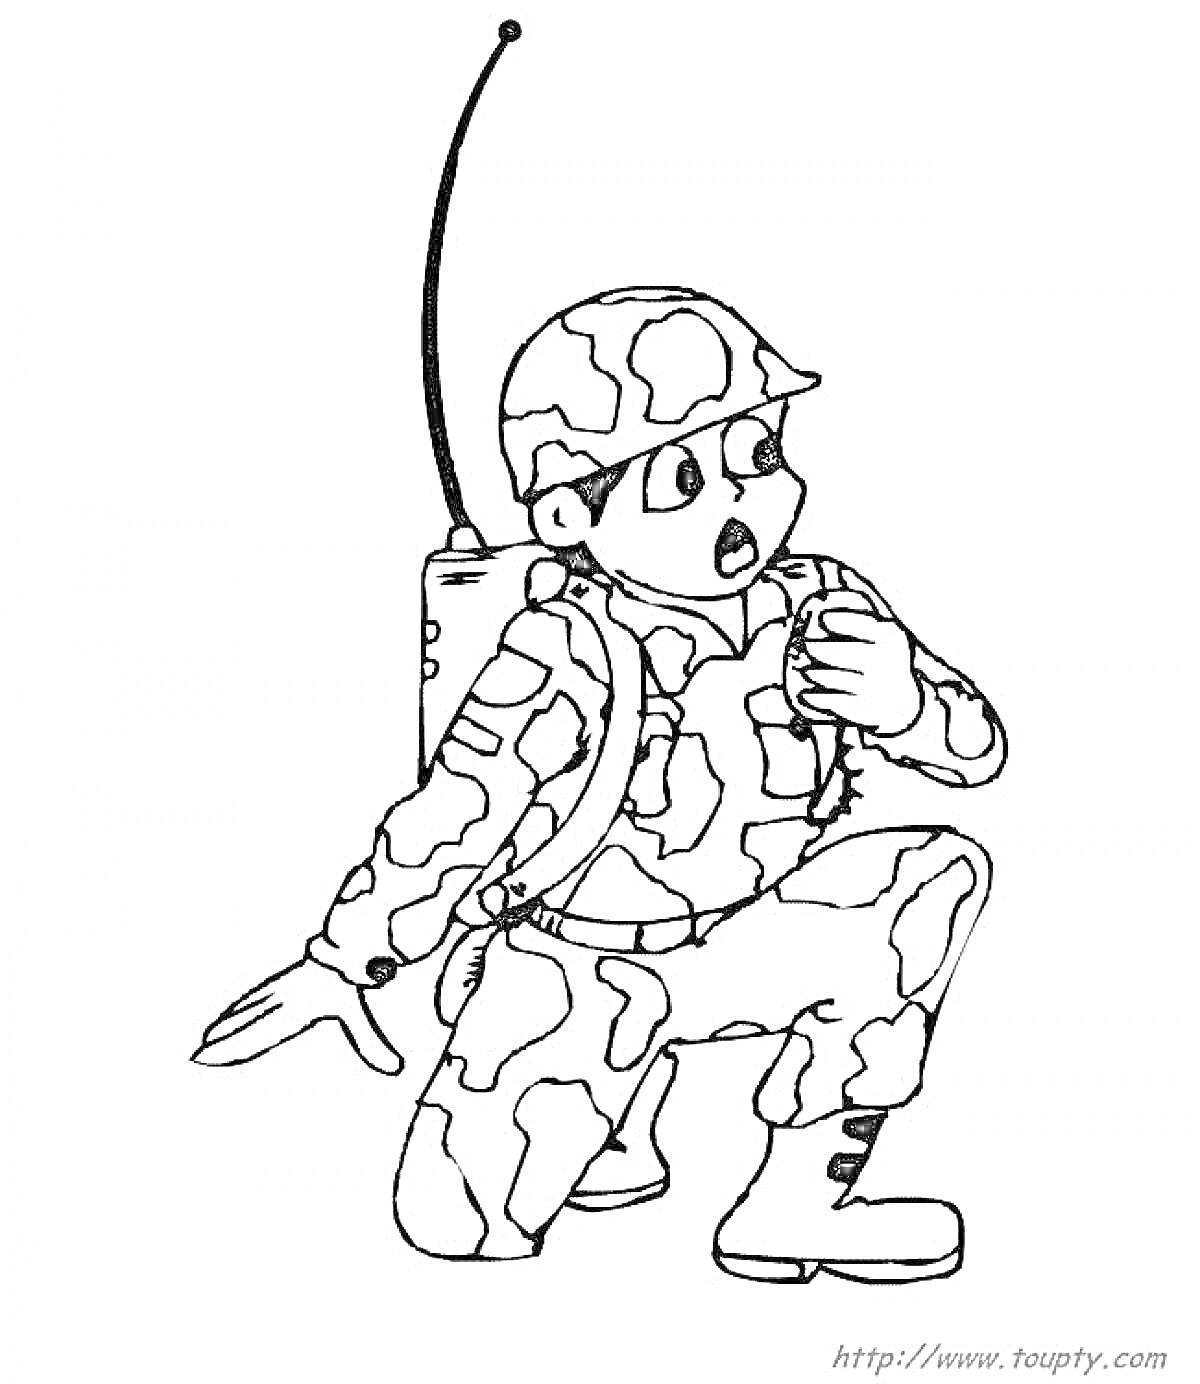 Раскраска солдат с радиостанцией на коленях в камуфляже